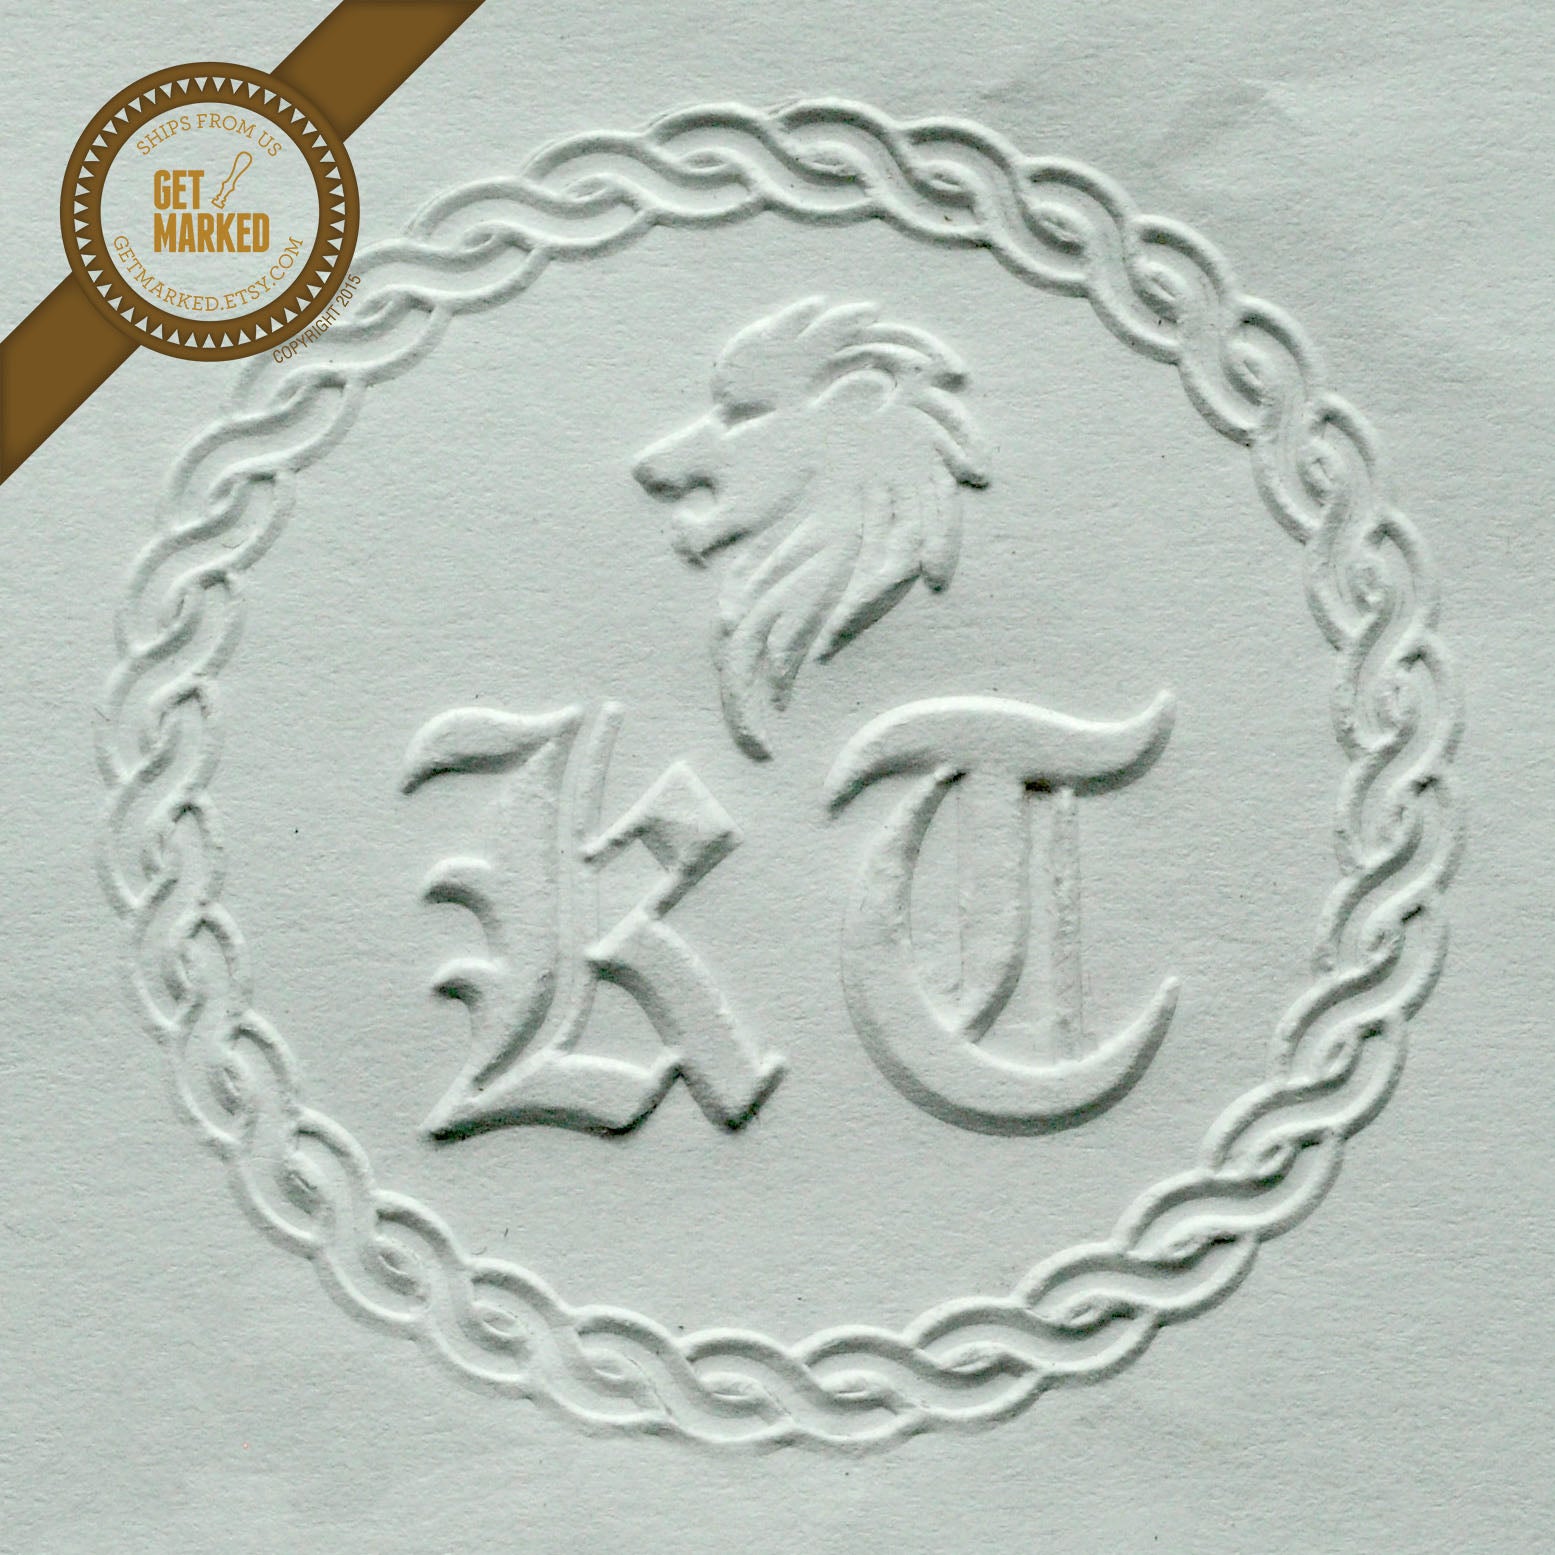 Embosser Stamp Library, Custom Embosser Stamp